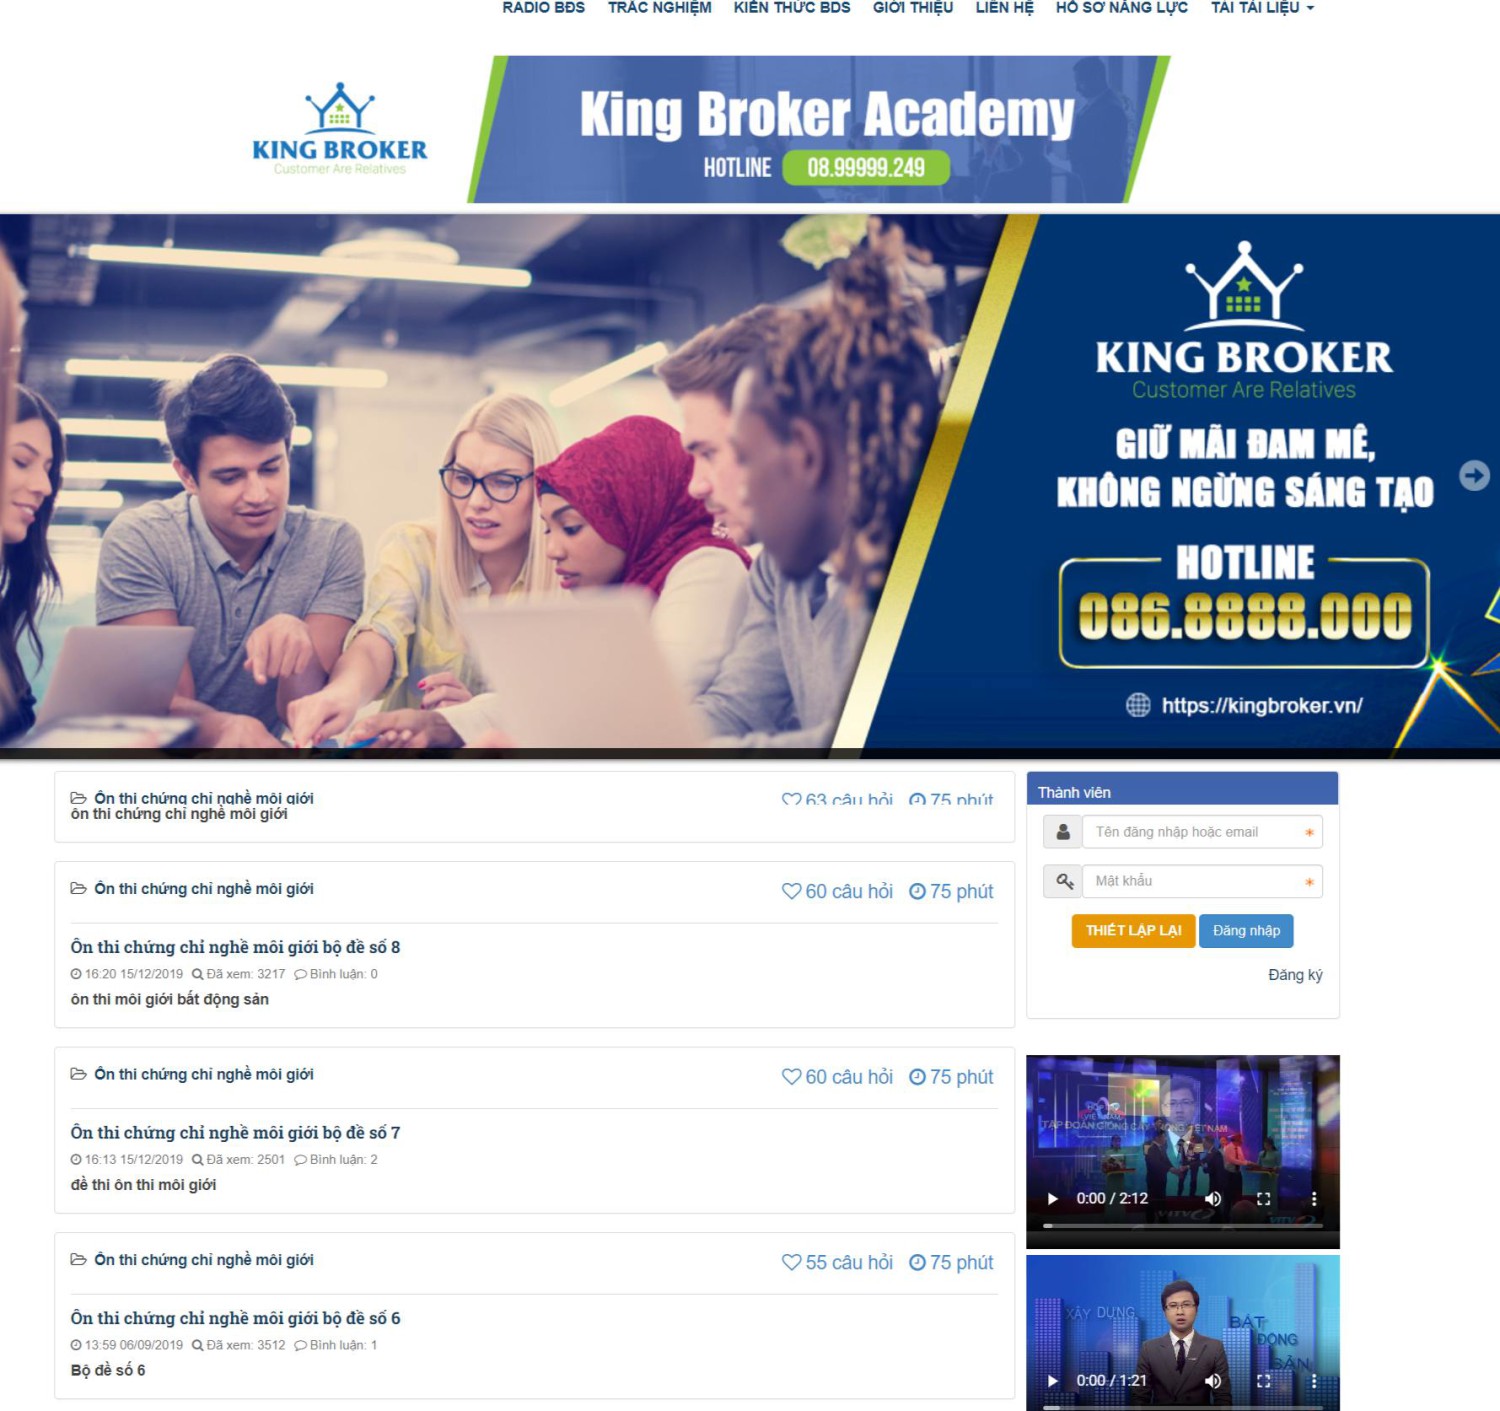 King Broker Academy một trong những doanh nghiệp đang sử dụng phần mềm AZtest để đánh giá năng lực cho ứng viên